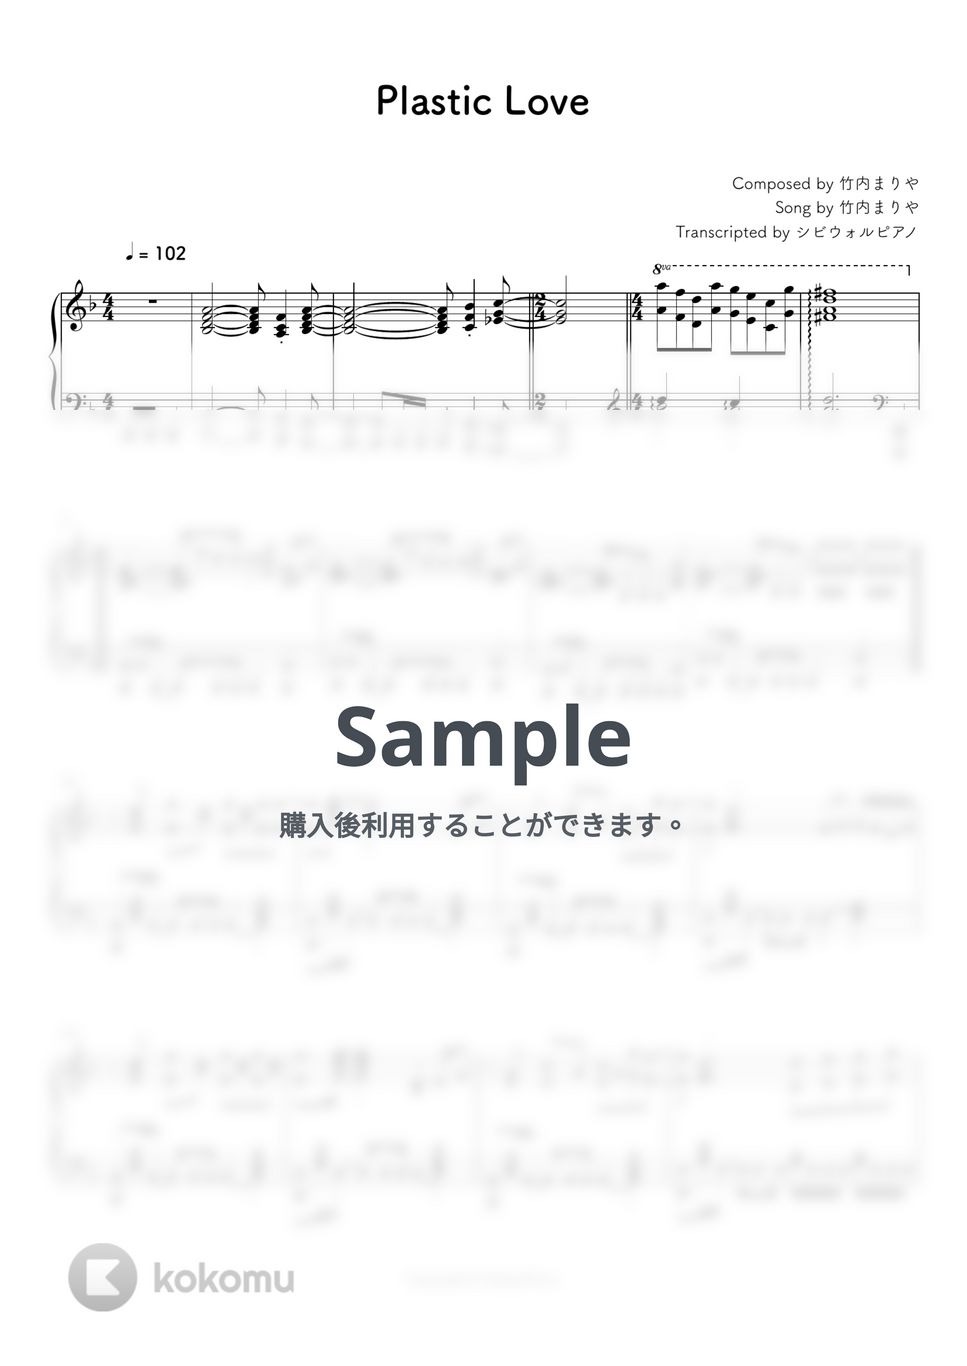 竹内まりや - Plastic Love by シビウォルピアノ